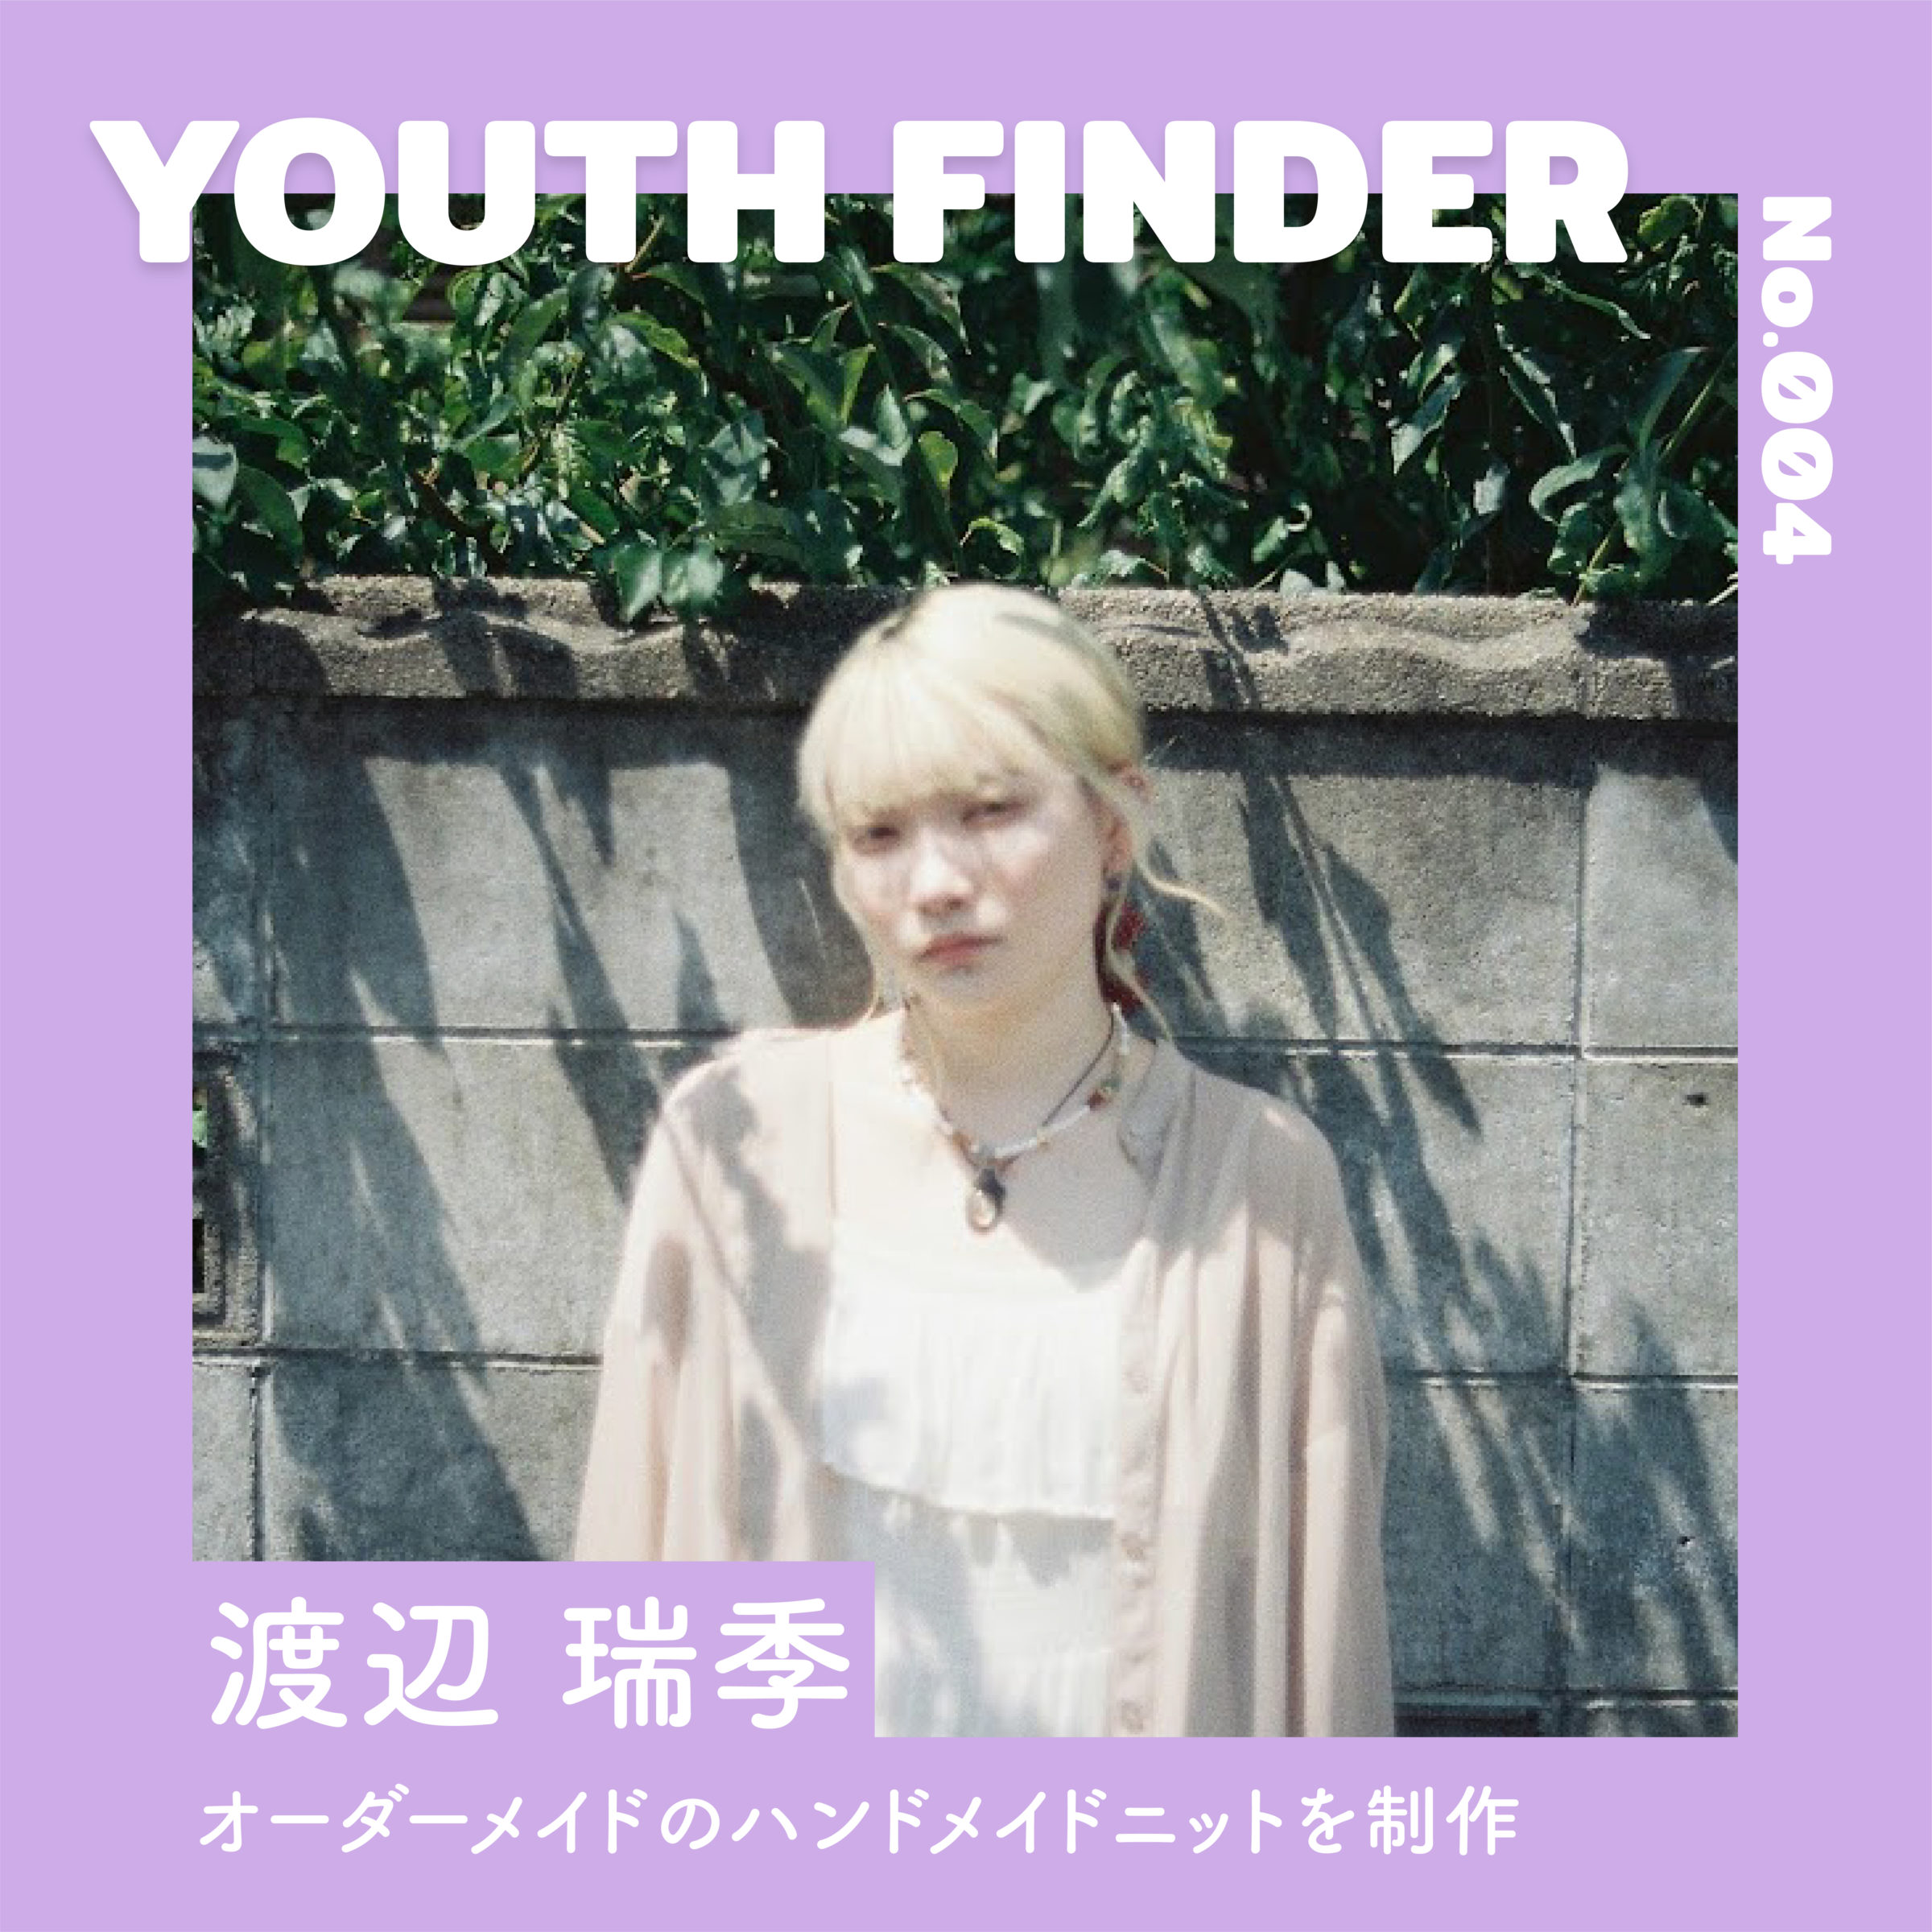 二ットを通じてファッションの楽しさを伝える　渡辺 瑞季さん【Youth Finder】の画像